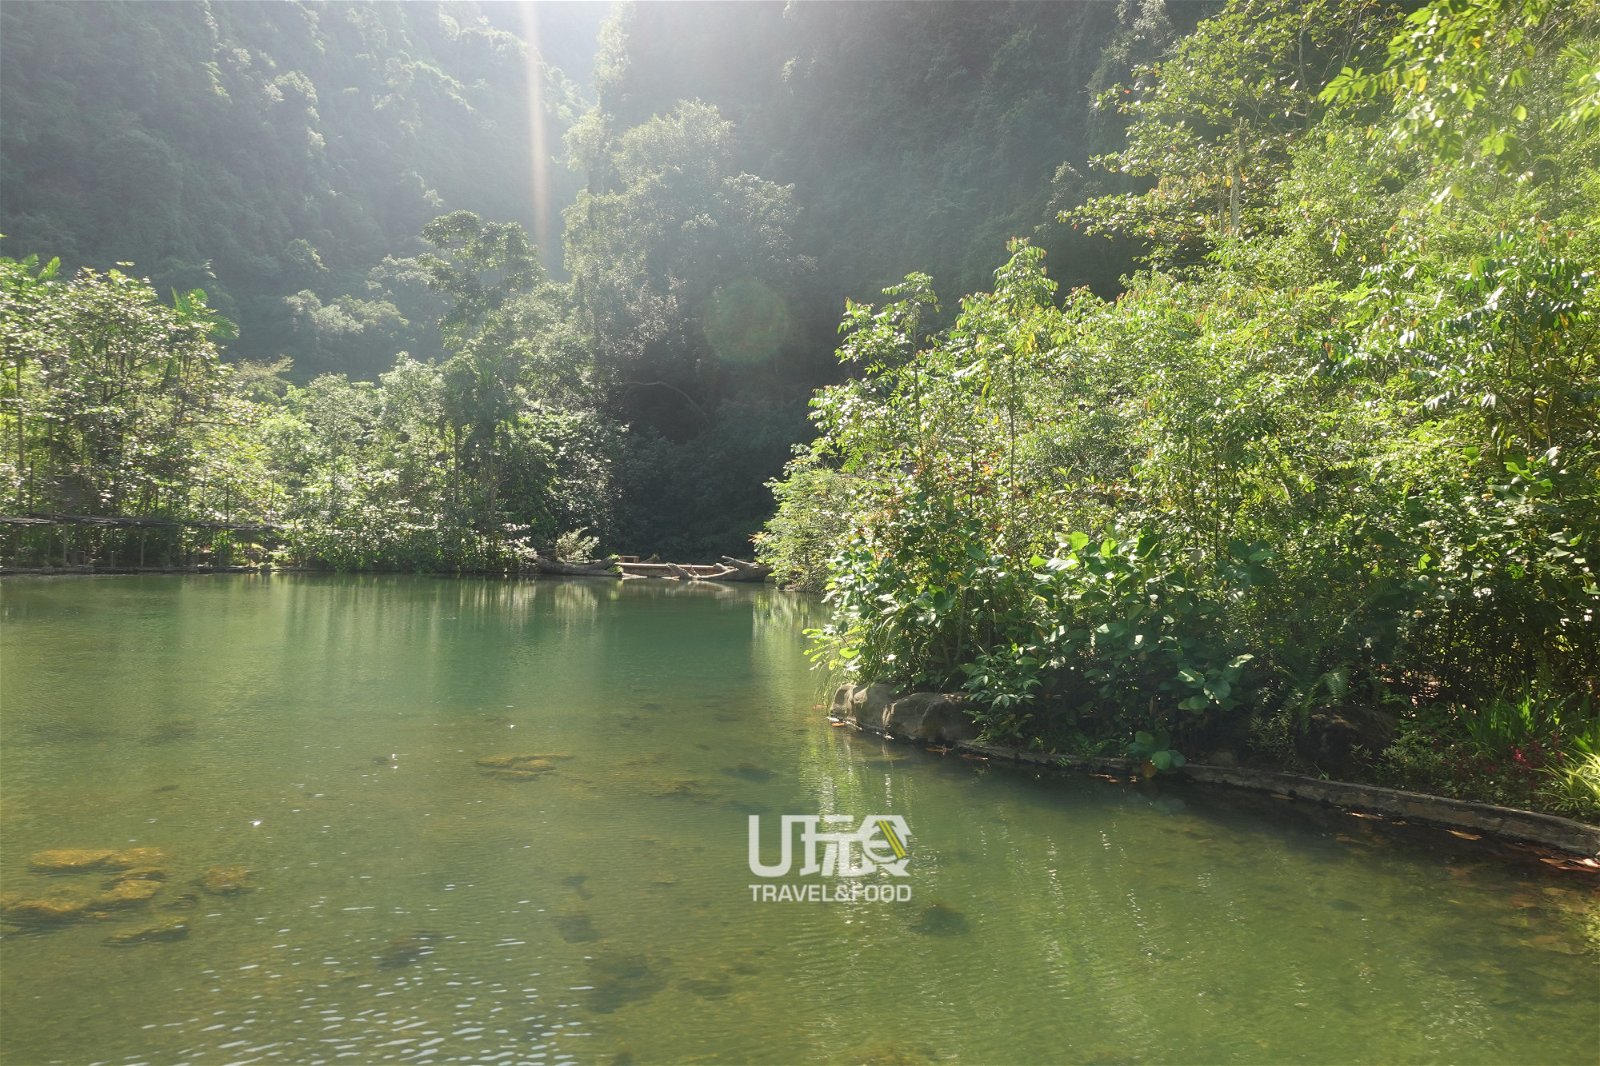 万雅岚温泉度假村是马来西亚怡保首个奢华自然温泉养生度假地。